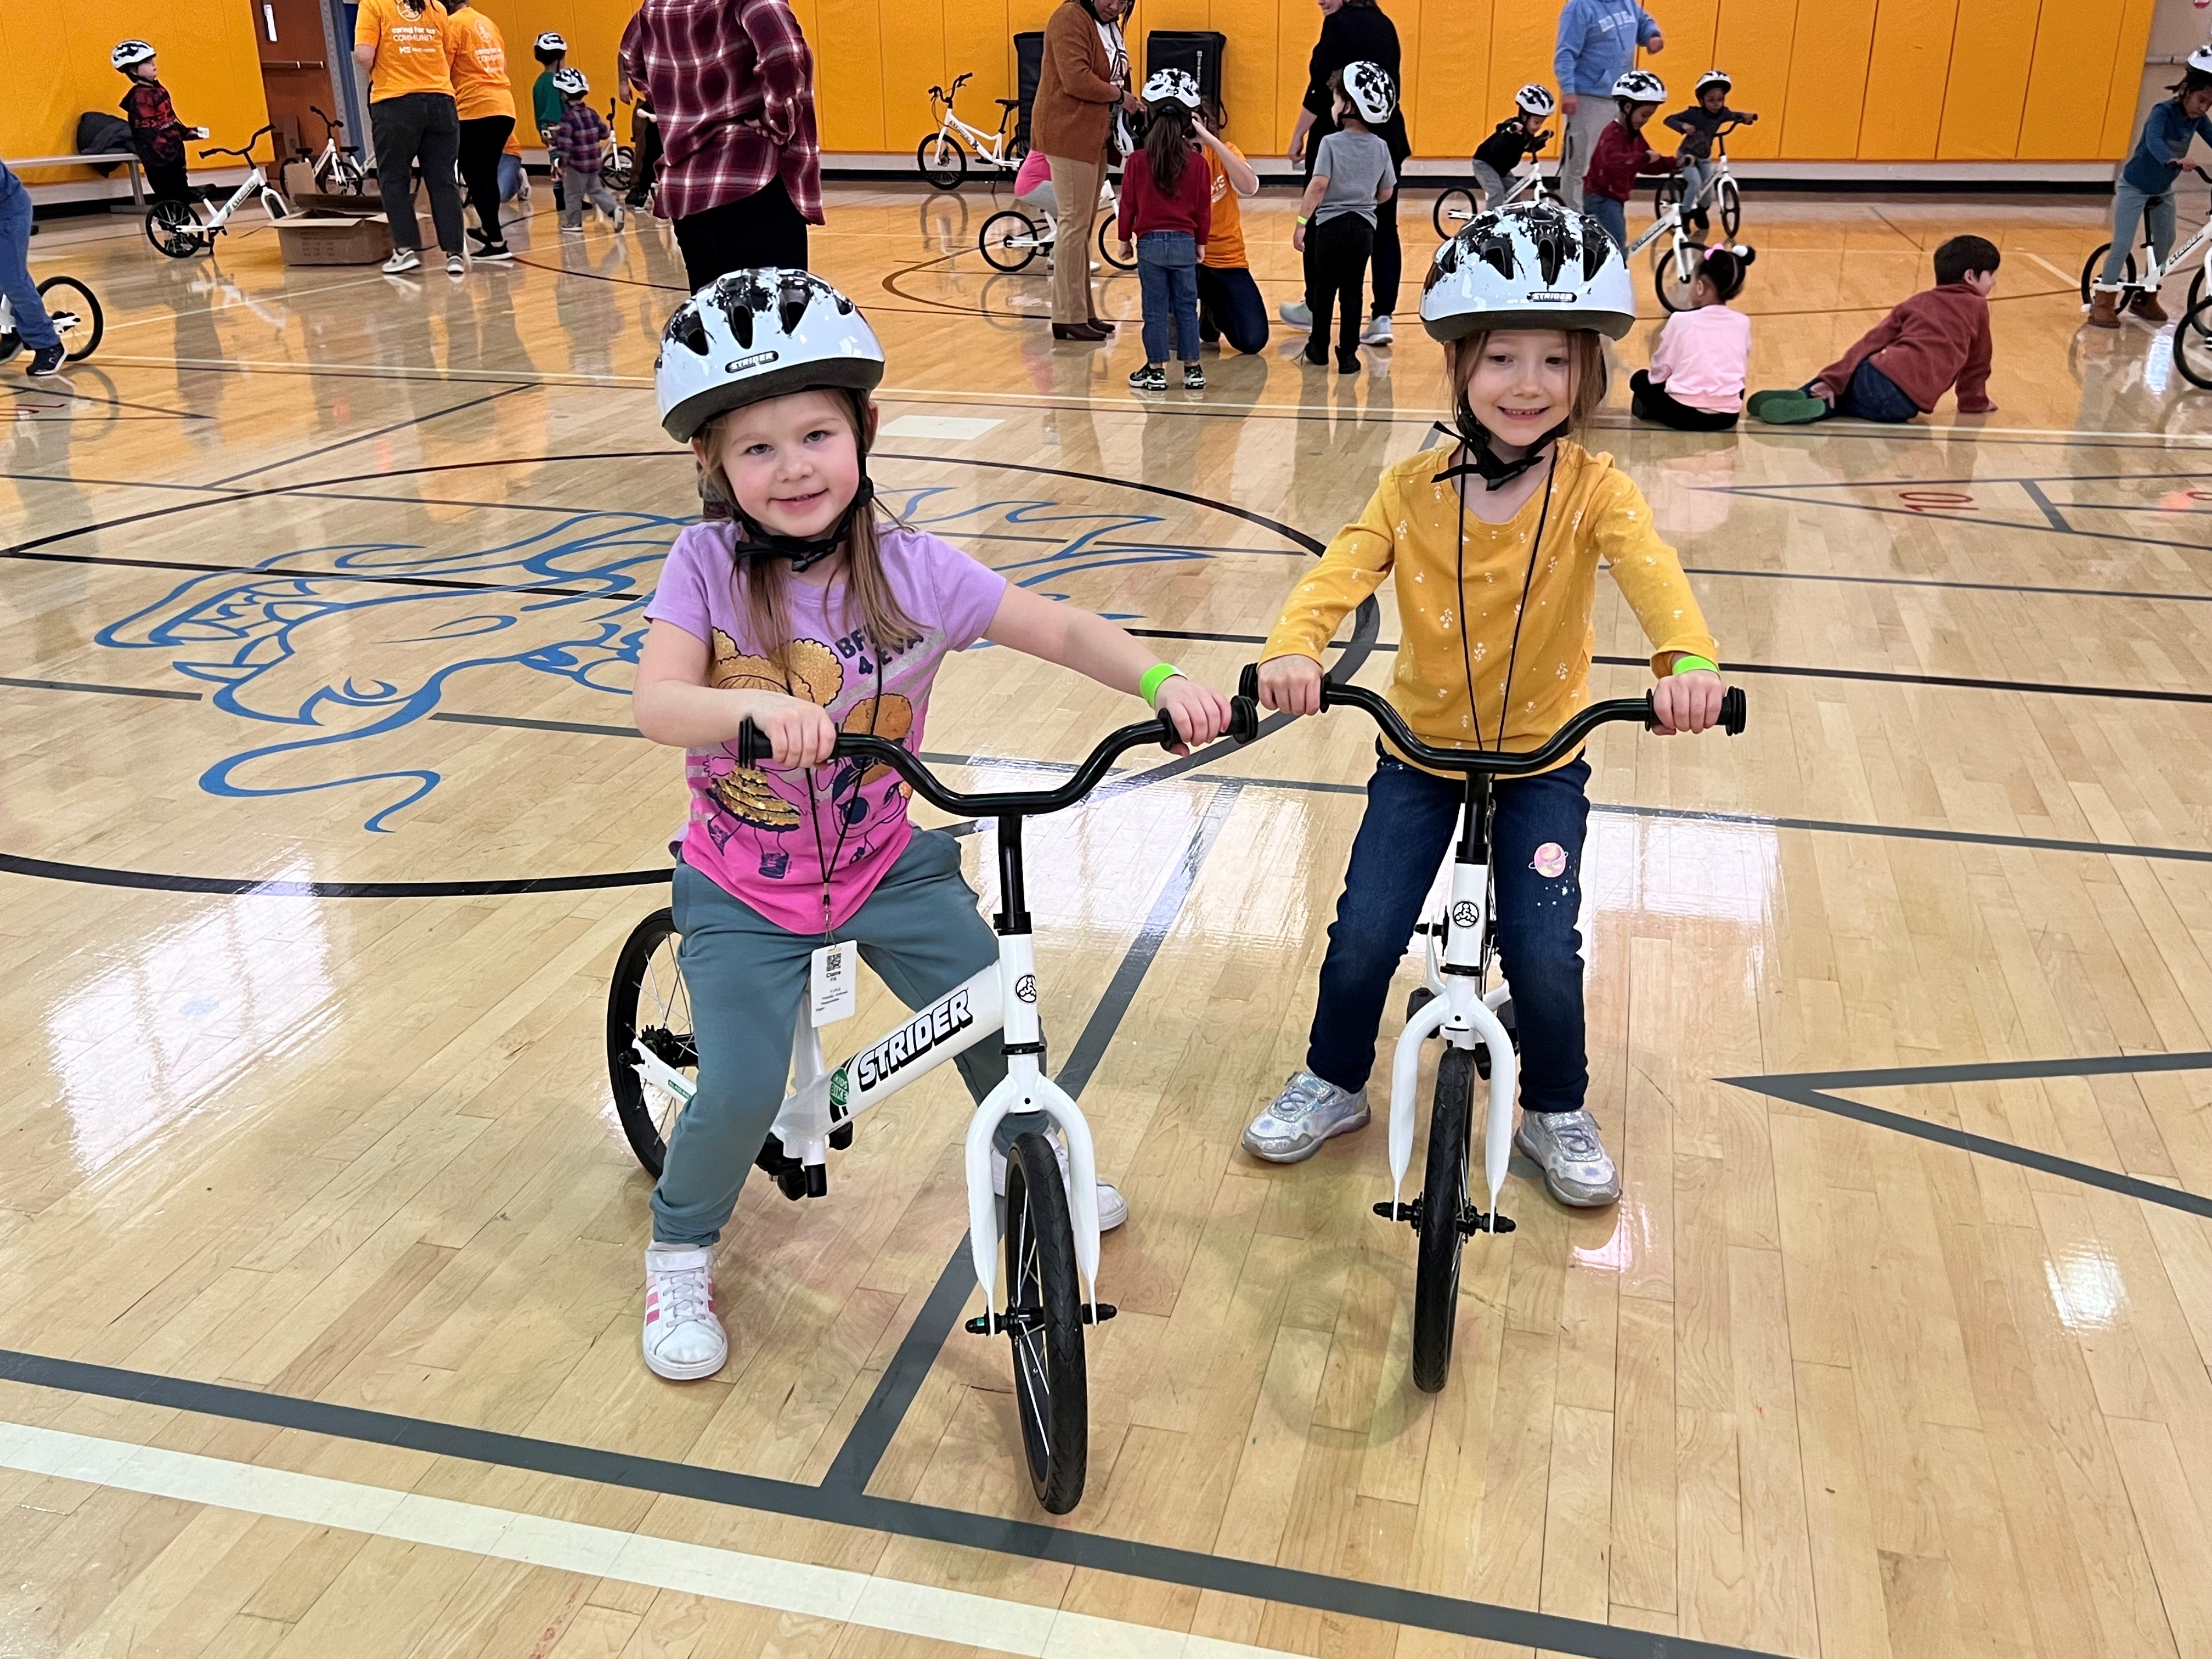 children riding bikes